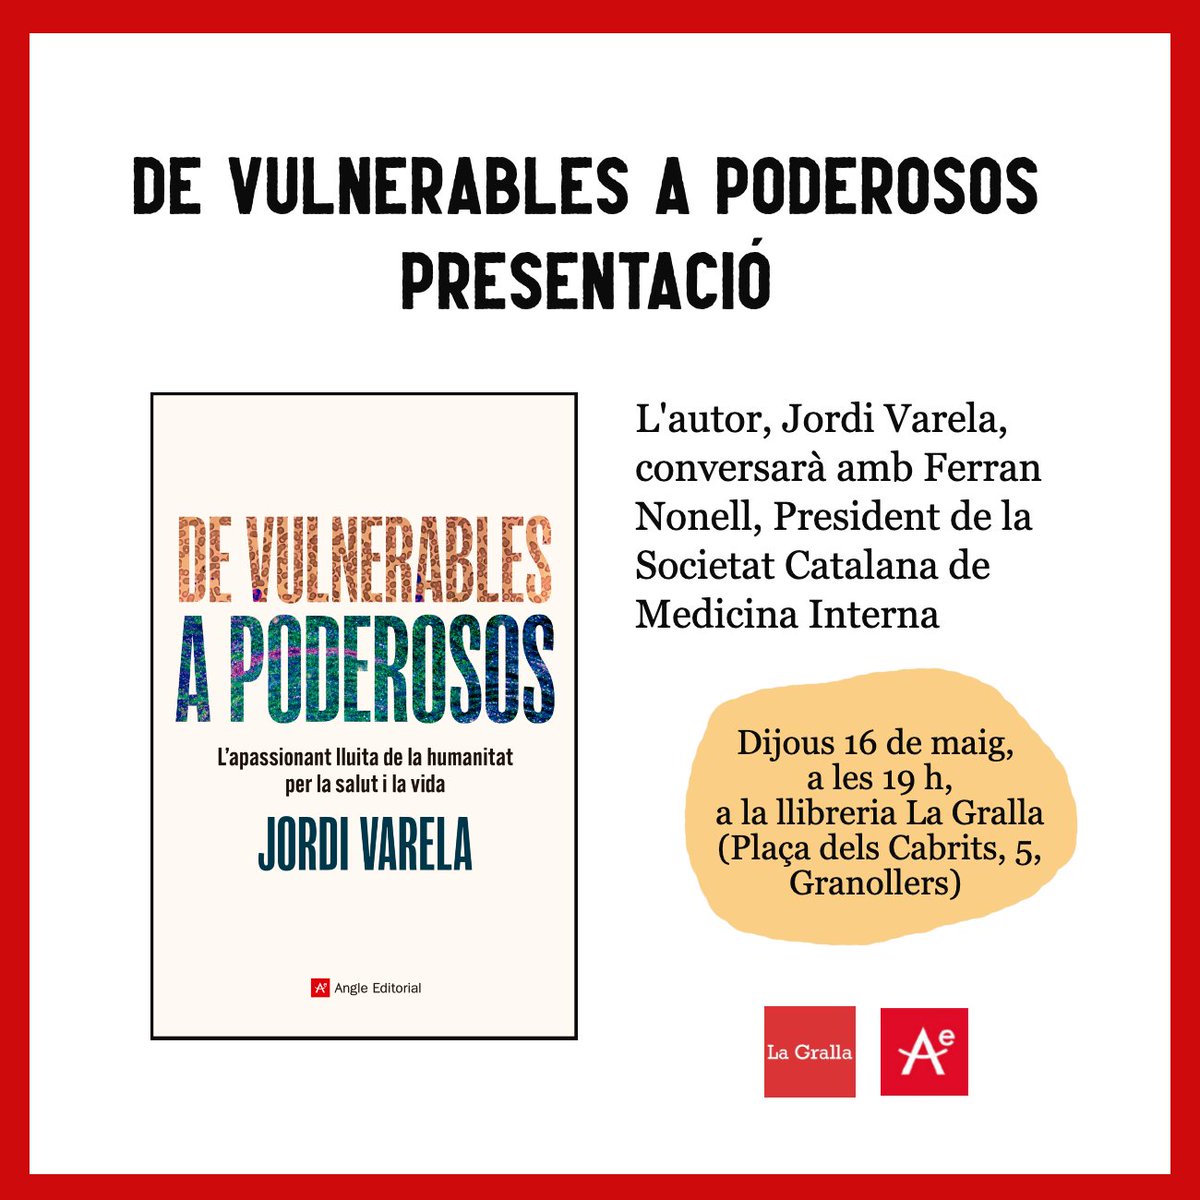 🔴Aquest dijous parlem de salut a través de la presentació del llibre 'De vulnerables a poderosos' de Jordi Varela. L'autor conversarà amb Ferran Nonell. @angleeditorial Us esperem!